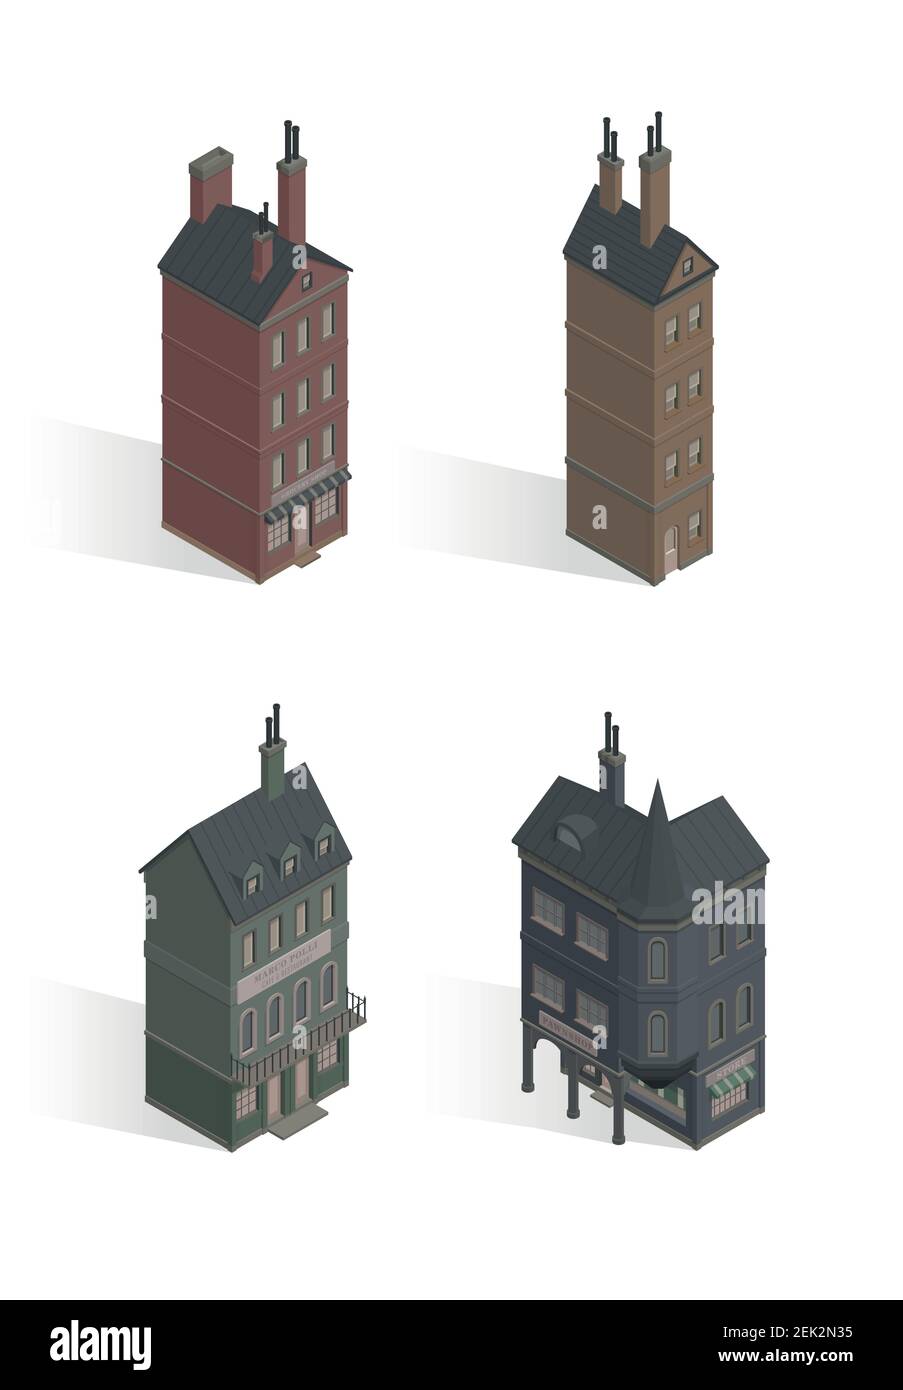 Insieme di case gotiche isometriche vettoriali. Illustrazione vettoriale del blocco vivente d'epoca. Edifici delle fate di Londra. Vittoriano, cupo, scuro e vecchio stile. Illustrazione Vettoriale